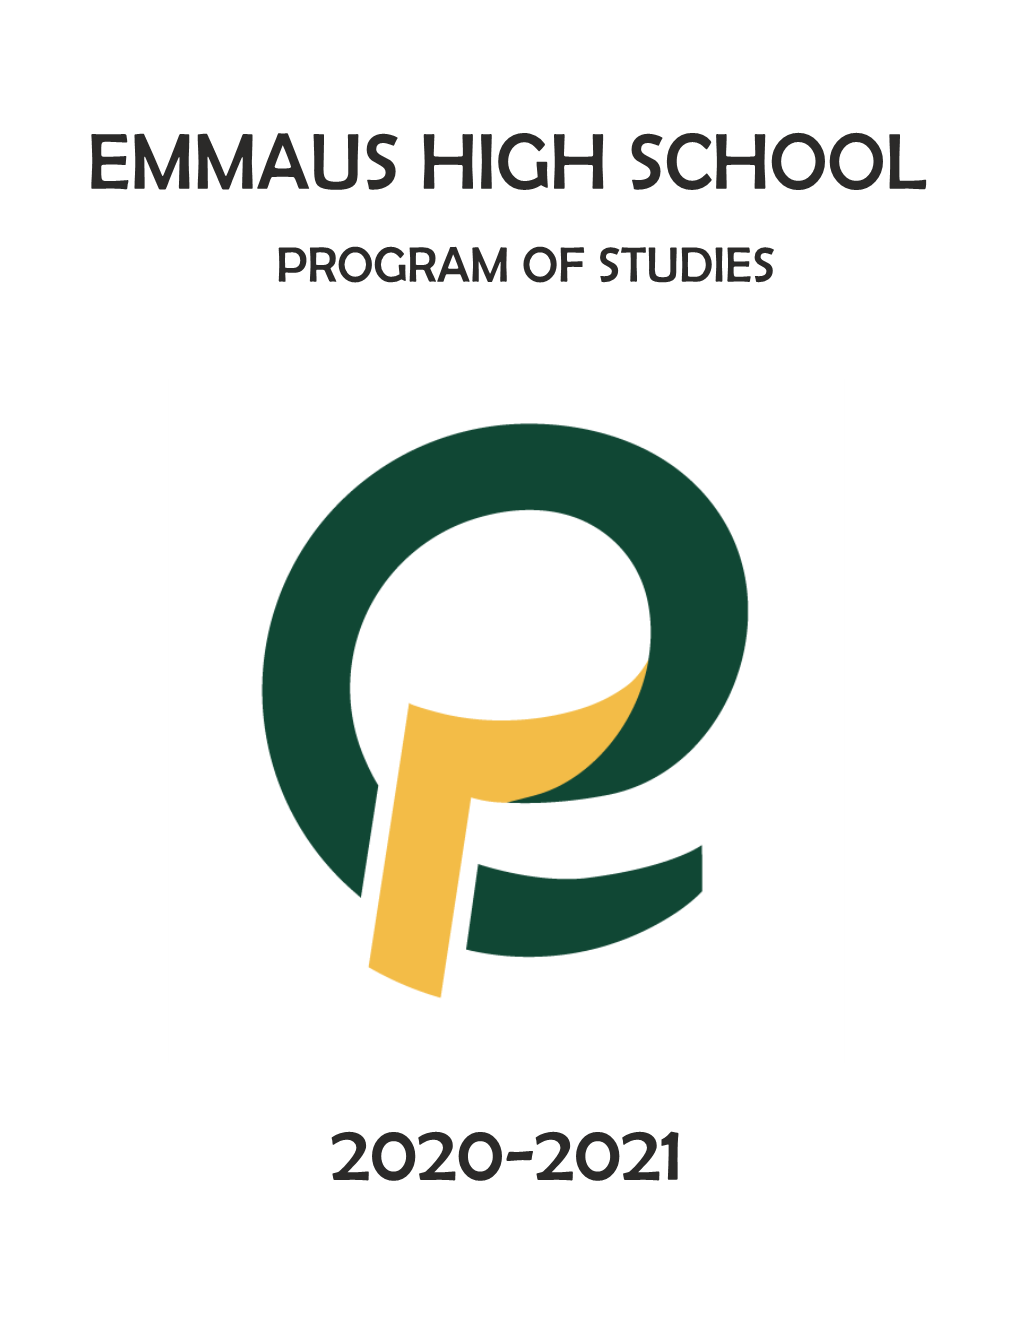 Emmaus High School 2020-2021